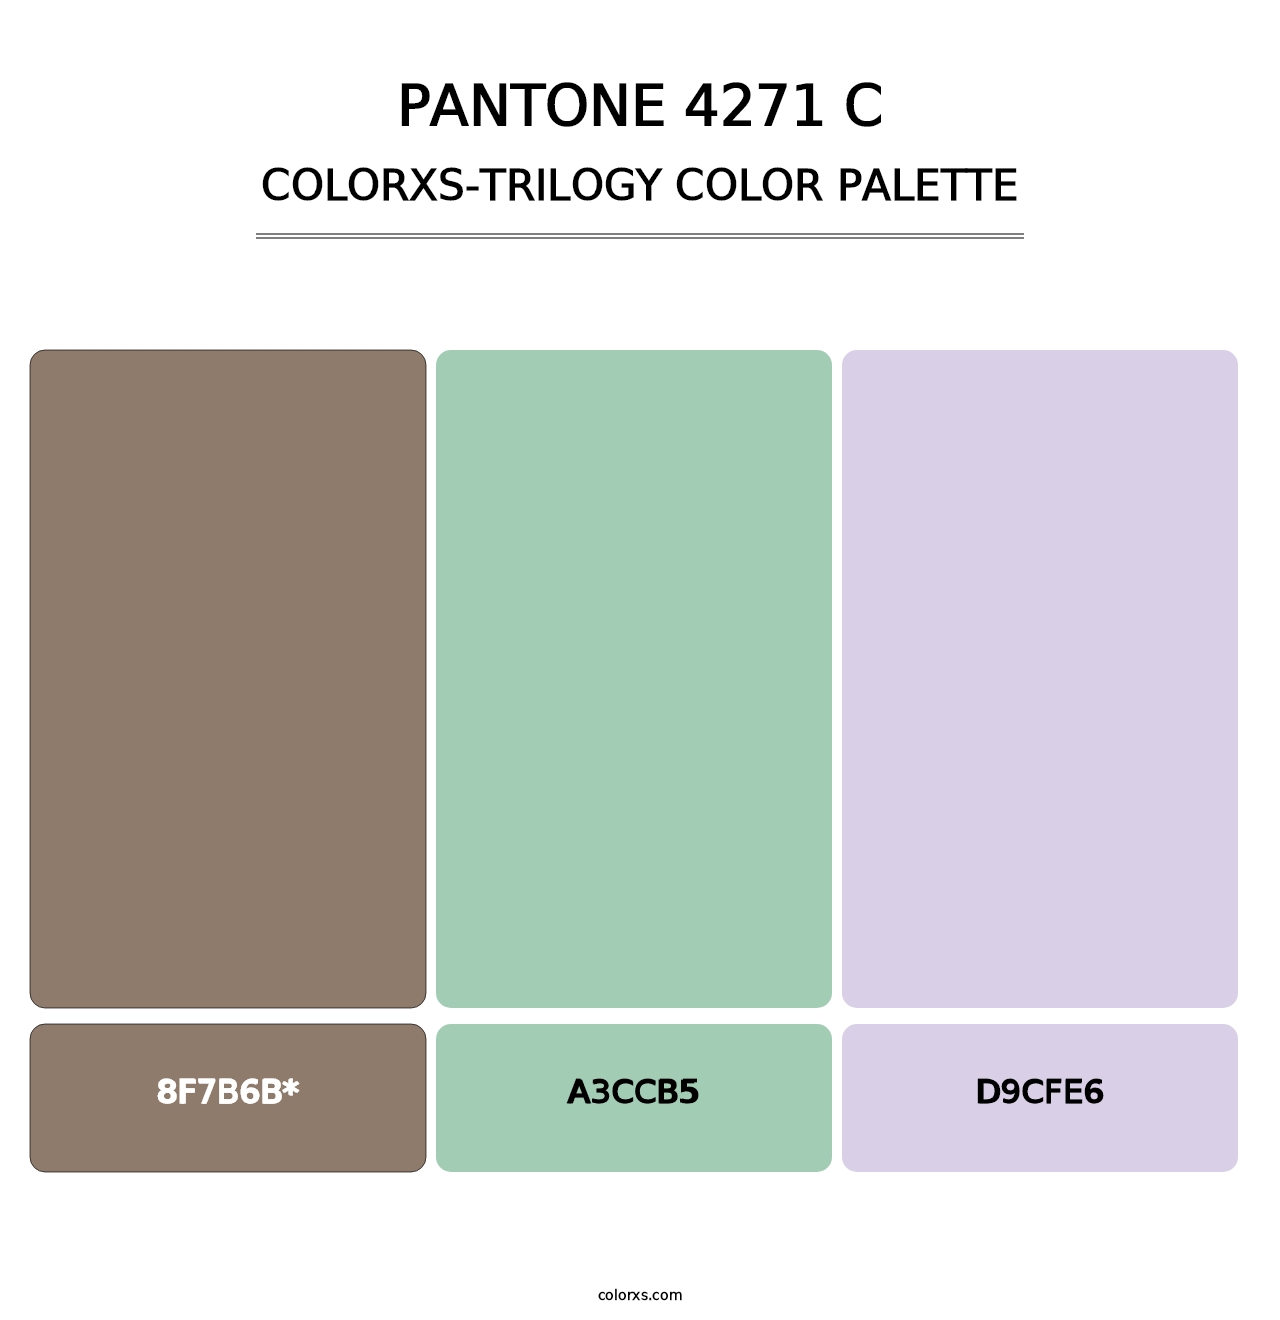 PANTONE 4271 C - Colorxs Trilogy Palette